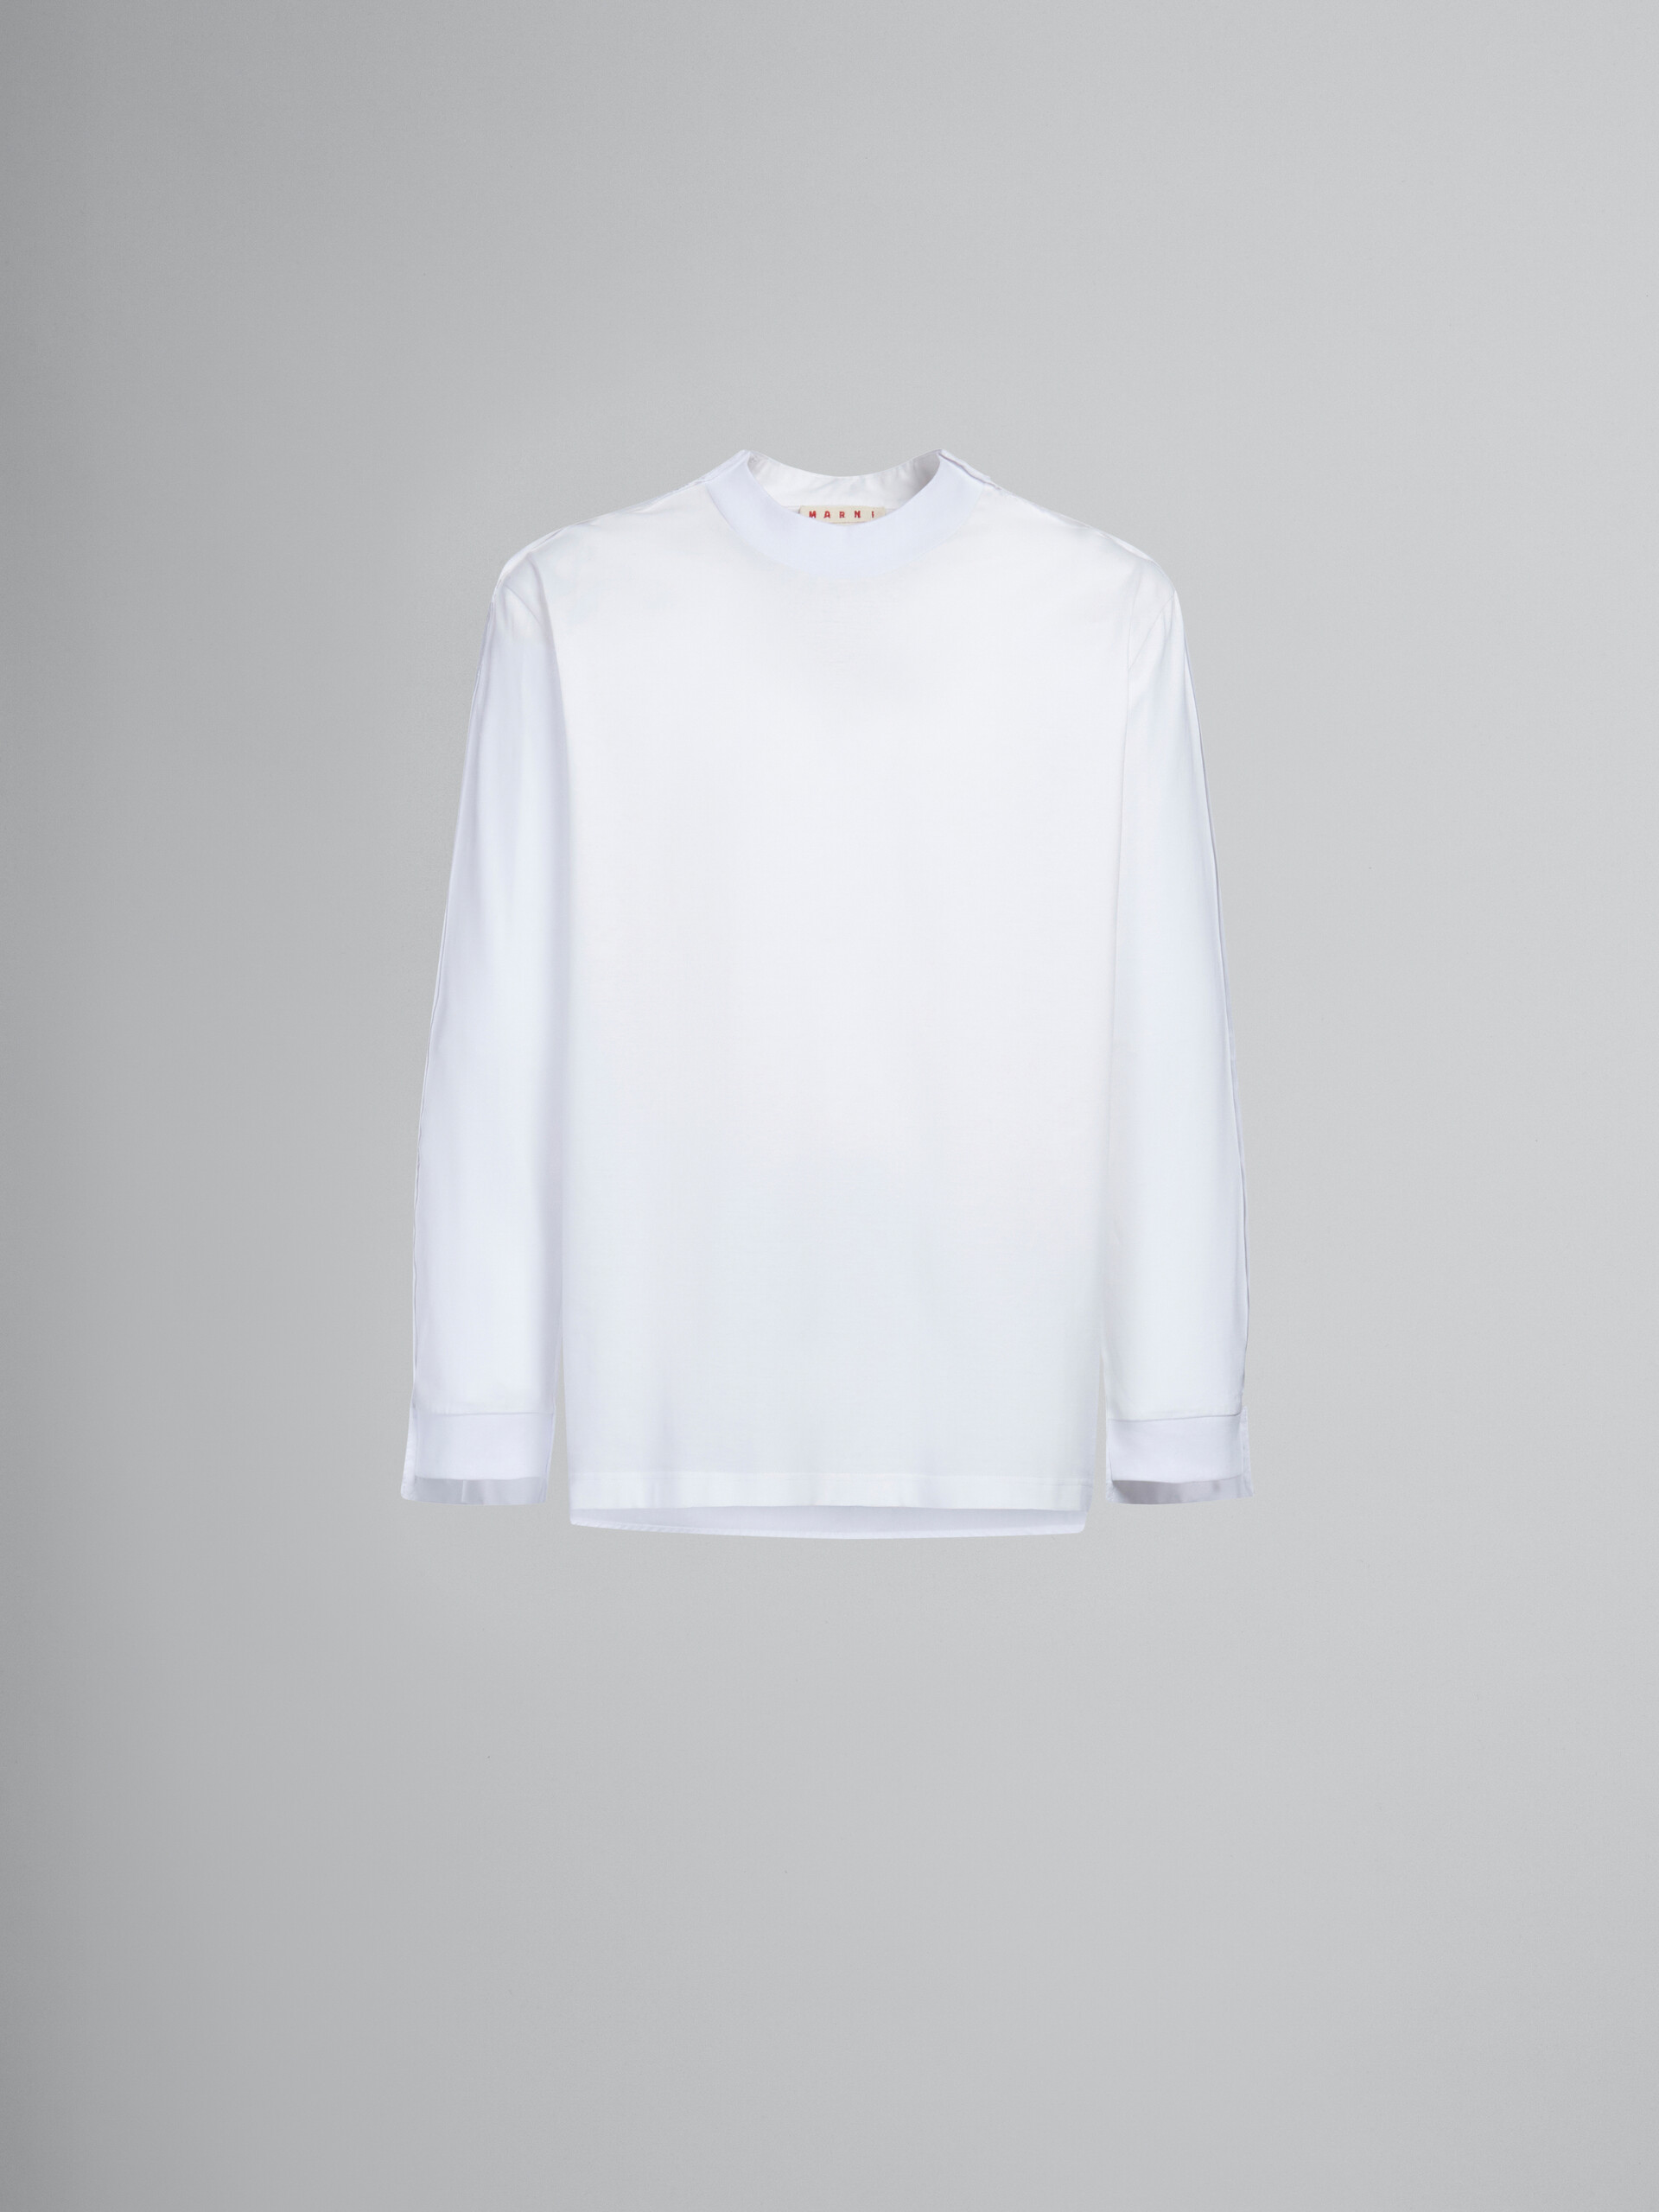 Camiseta de manga larga blanca de algodón ecológico con canesú en la parte trasera - Camisetas - Image 1